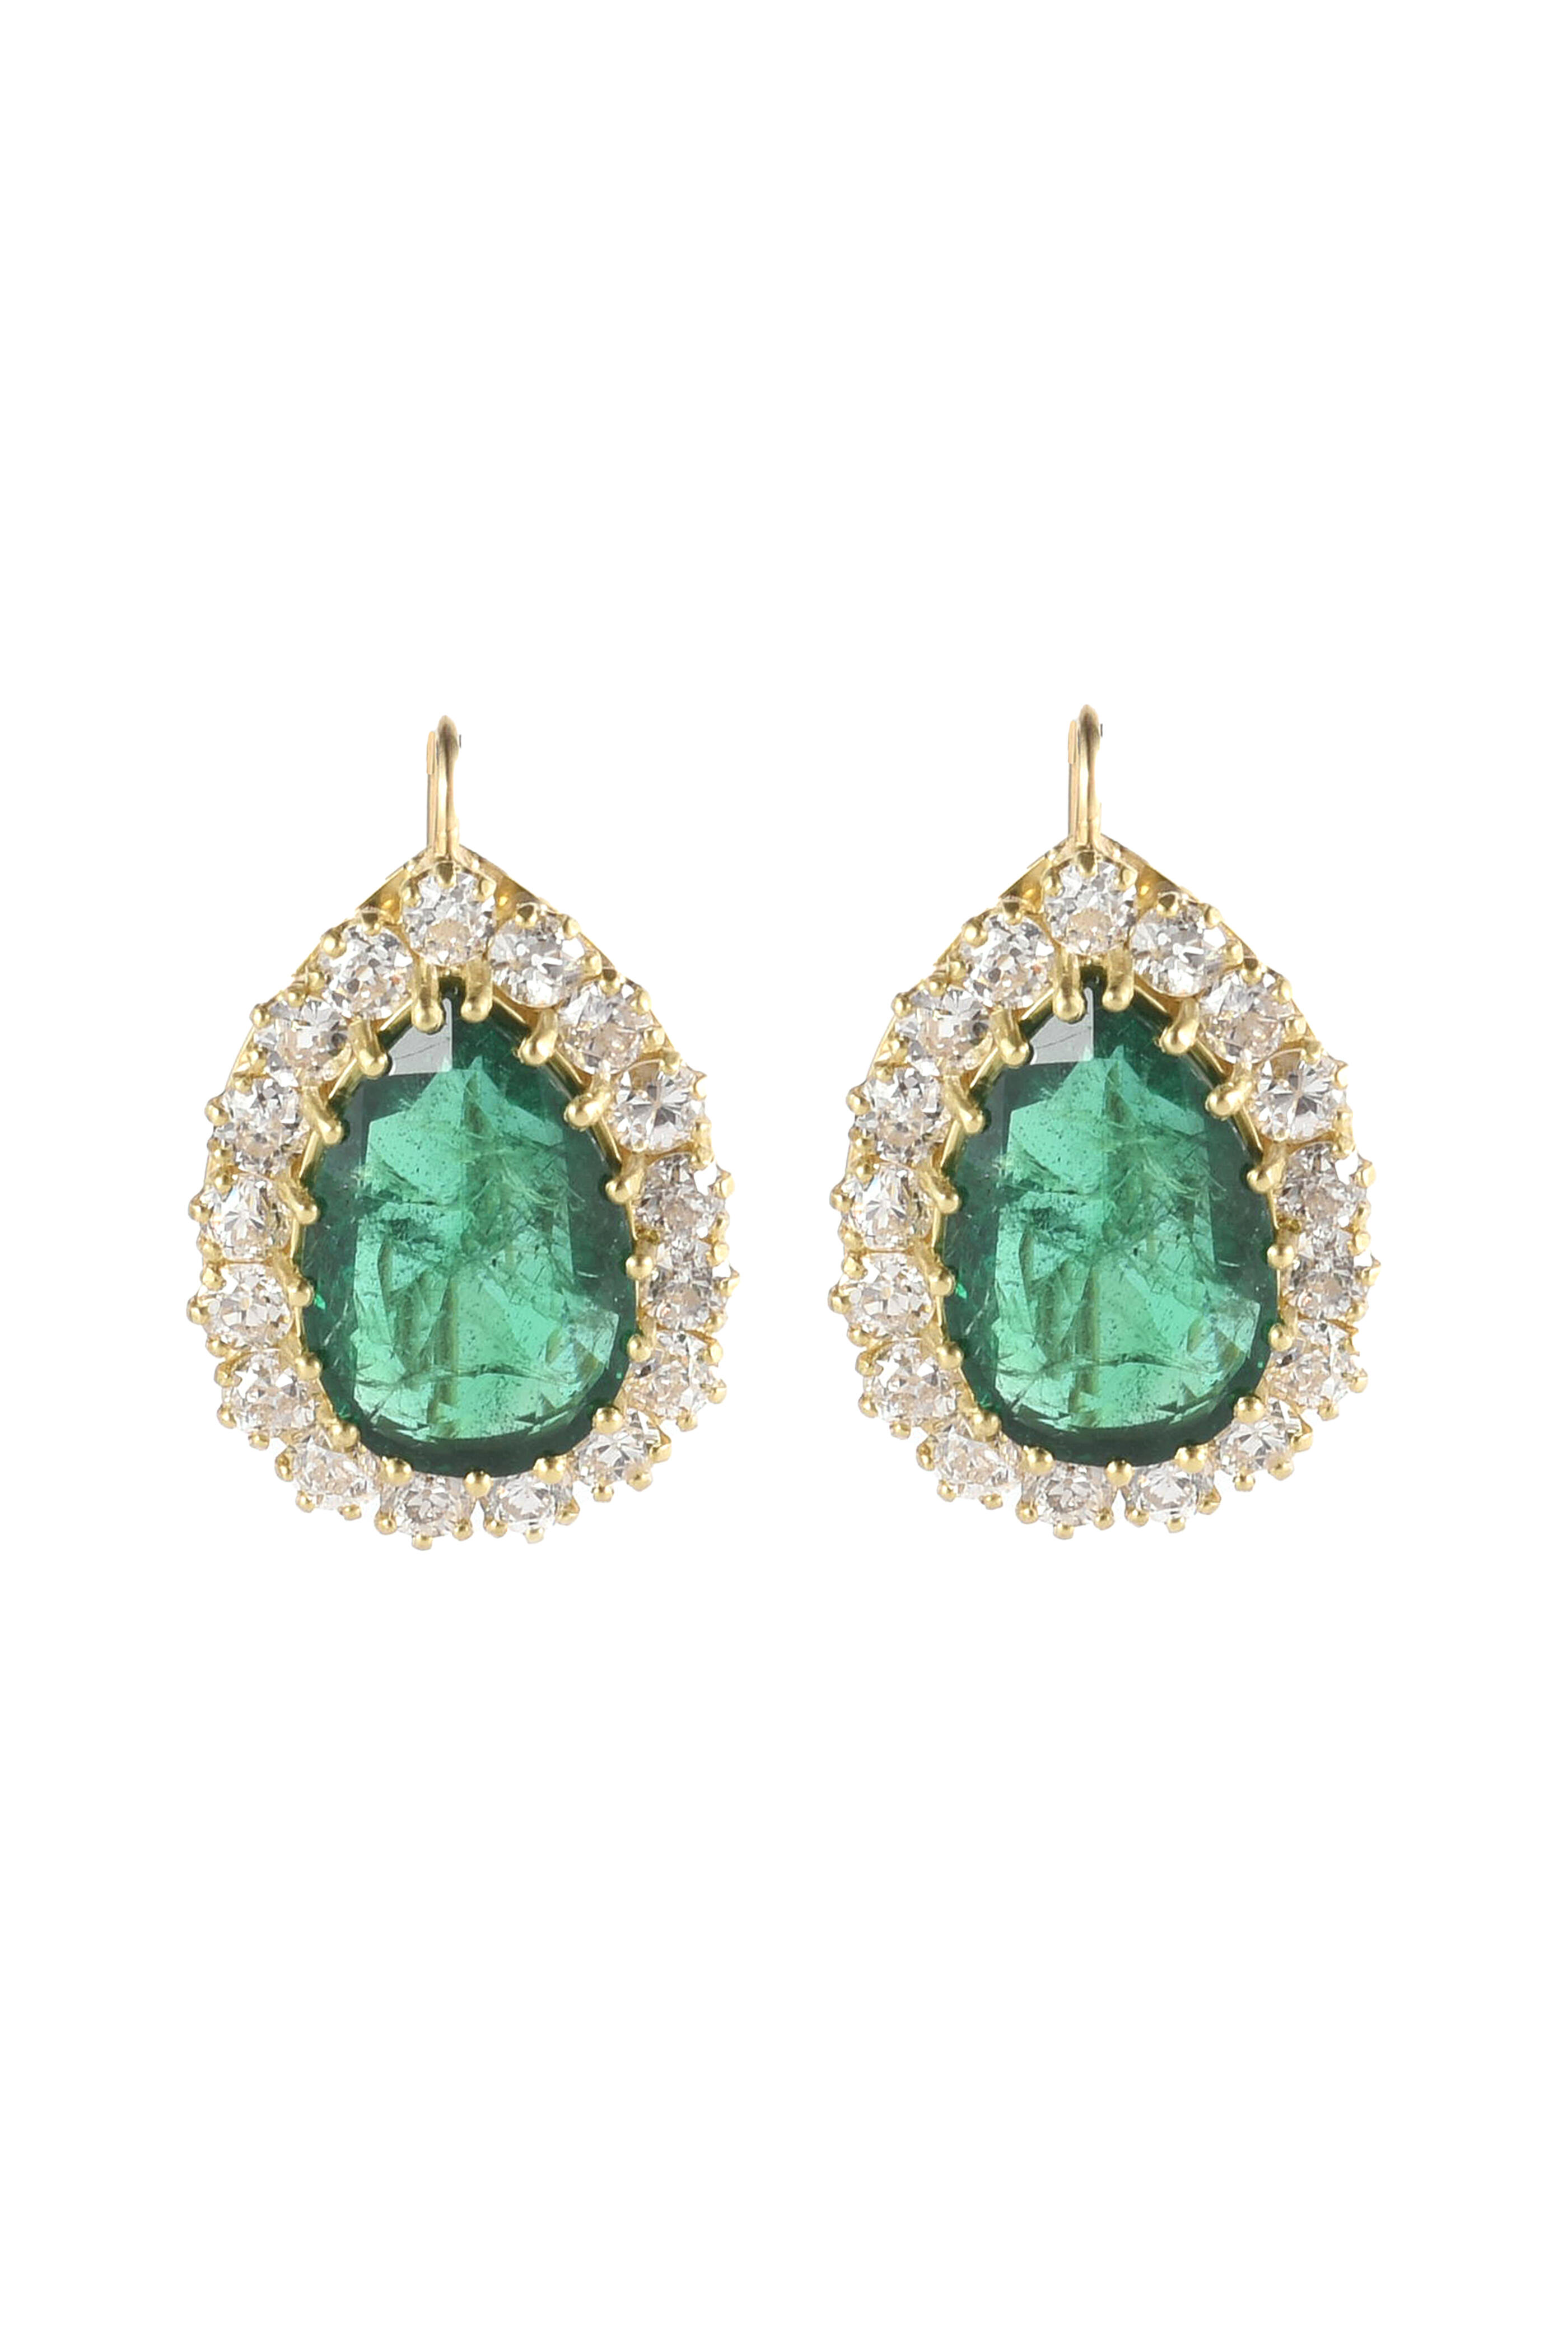 Sylva & Cie - Mozambique Emerald & Diamond Earrings